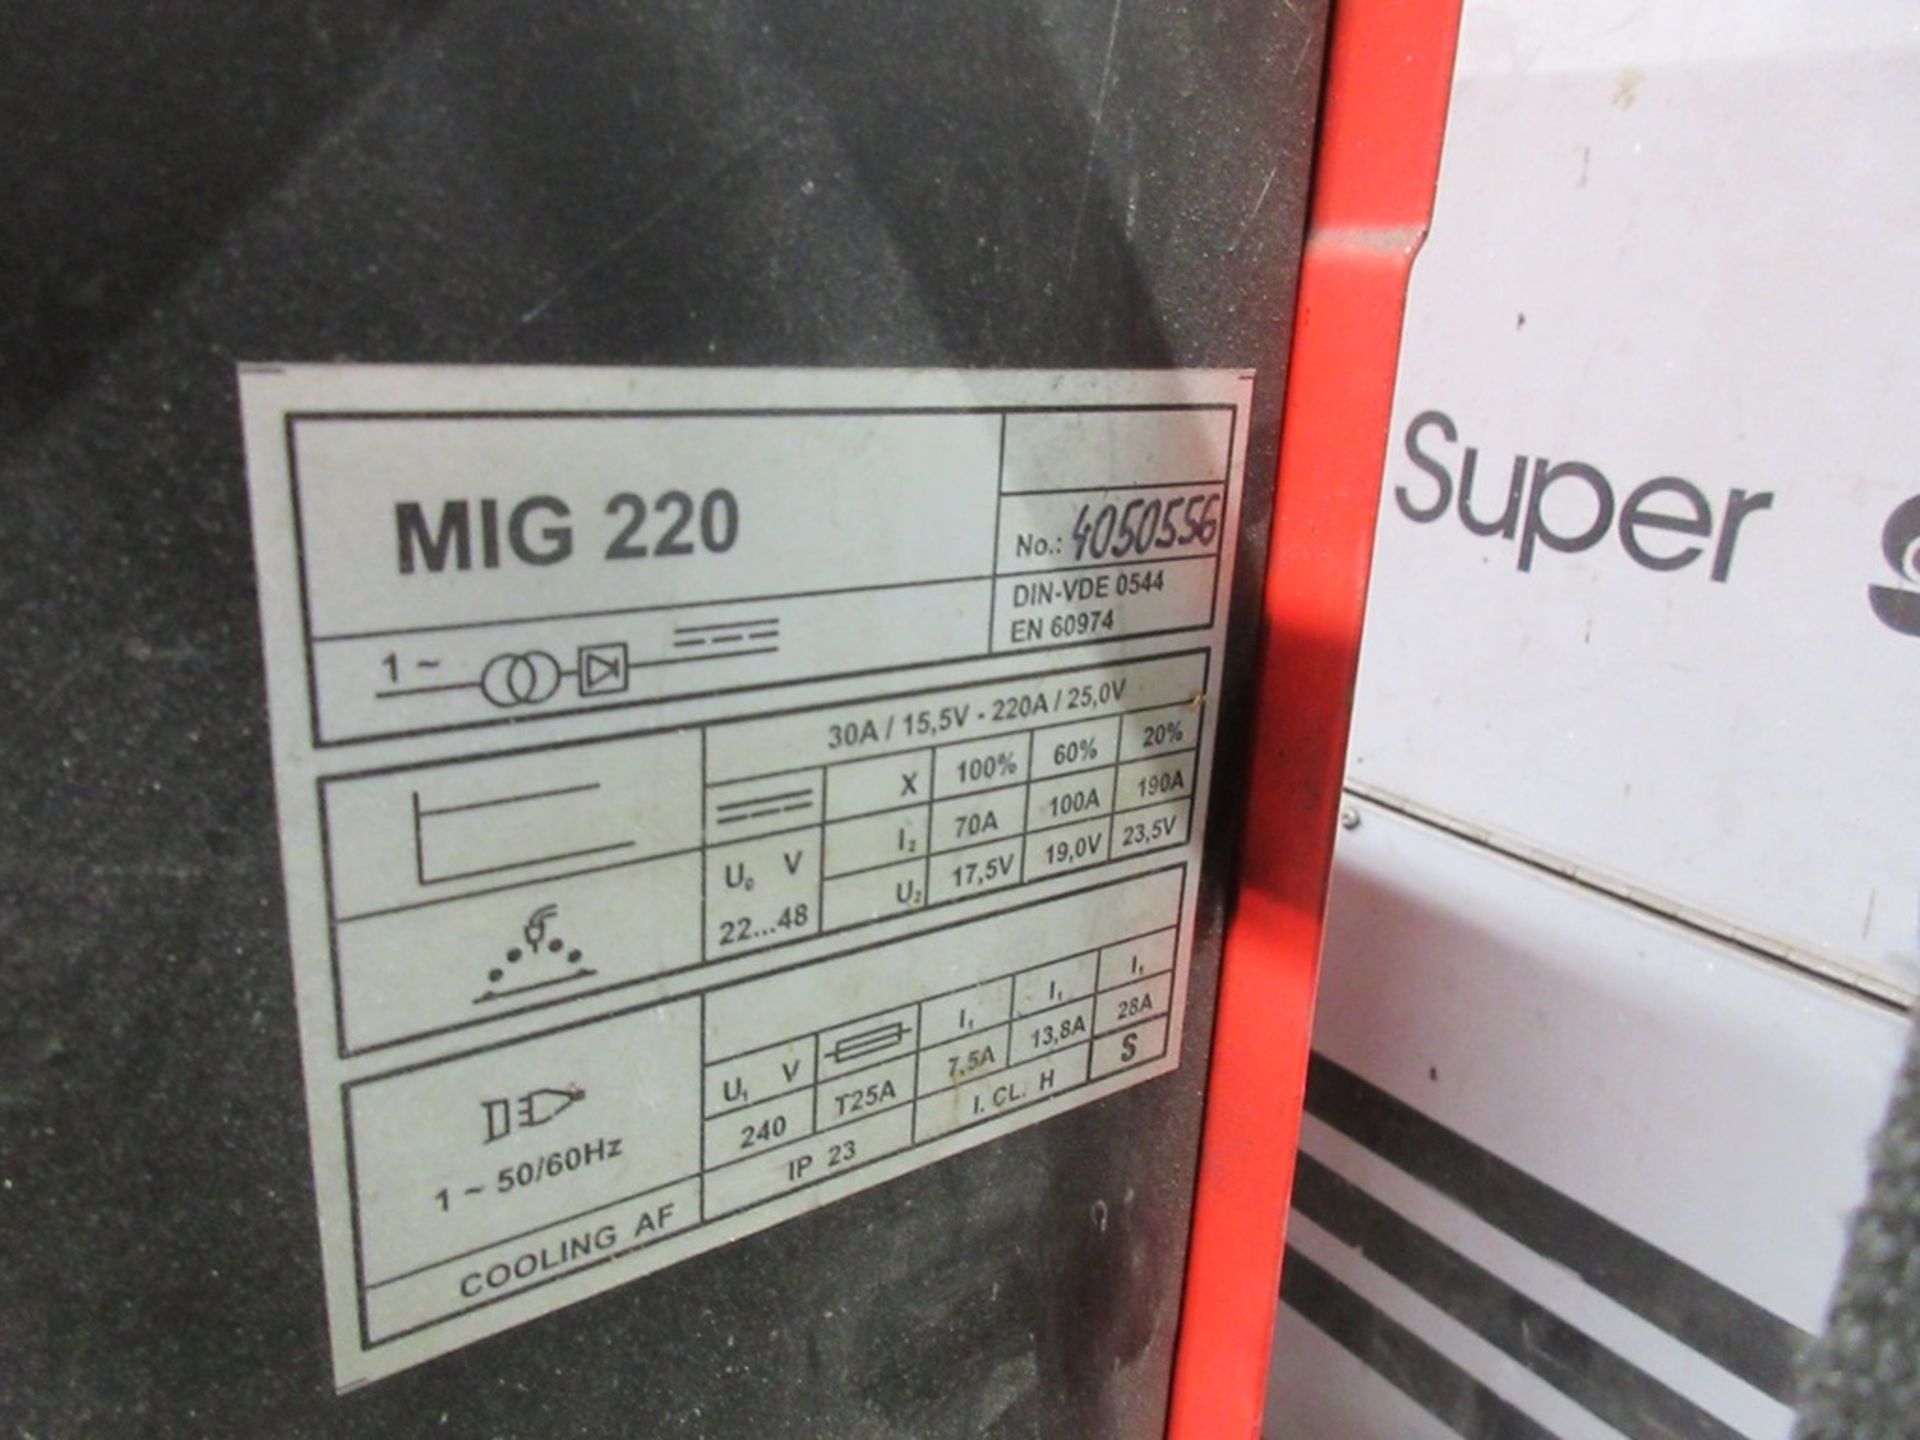 SWP Mig 220 Proline mig welder, serial no. 4050556 - Image 4 of 5